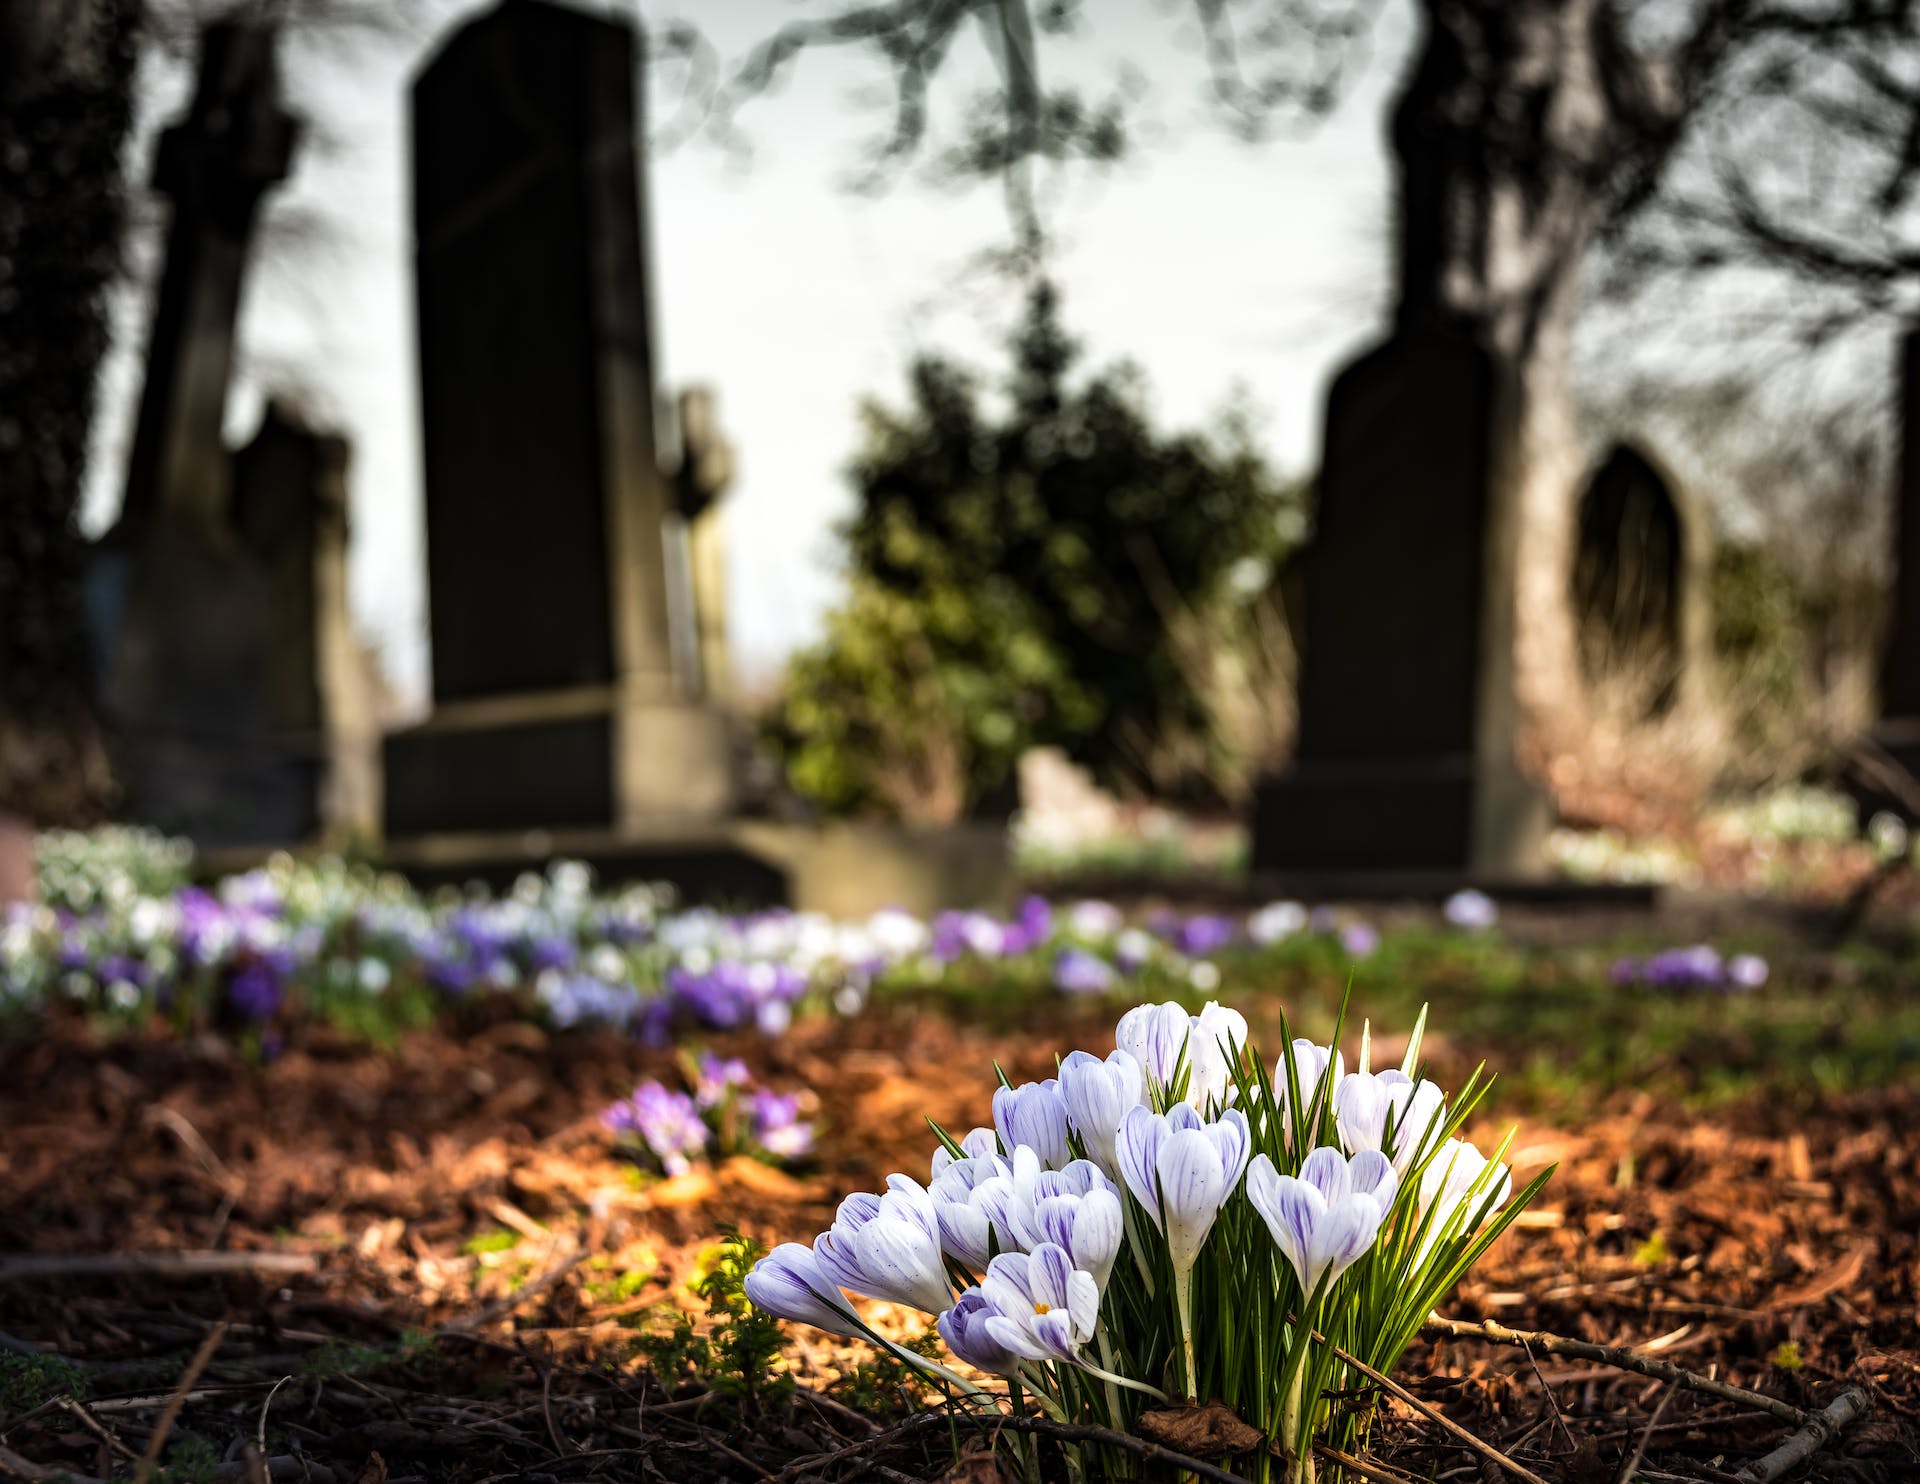 Flowers in a graveyard | Source: Pexels